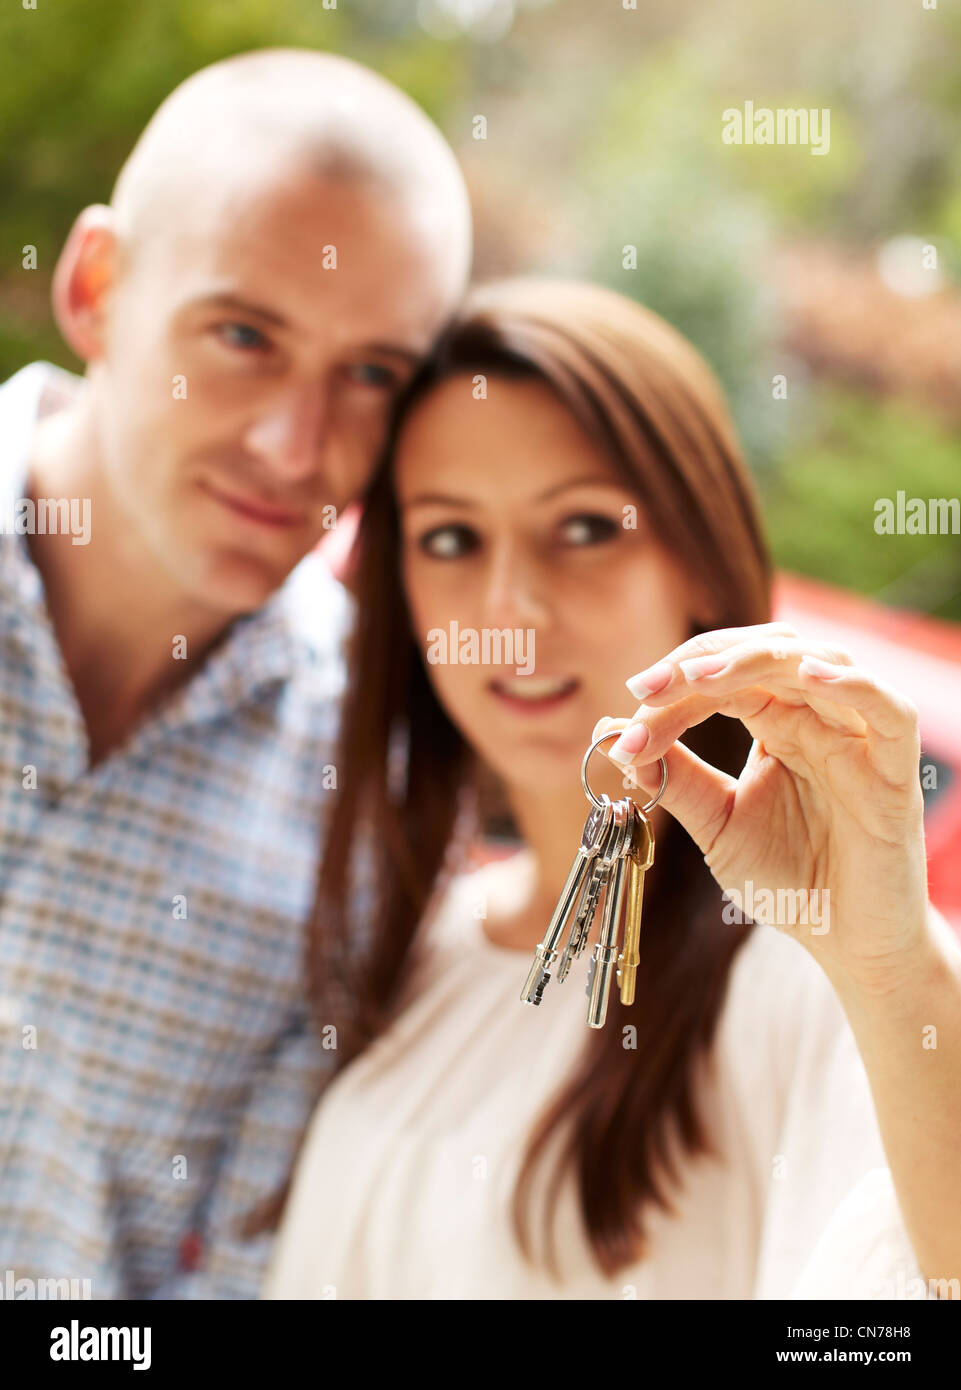 Couple holding keys Stock Photo